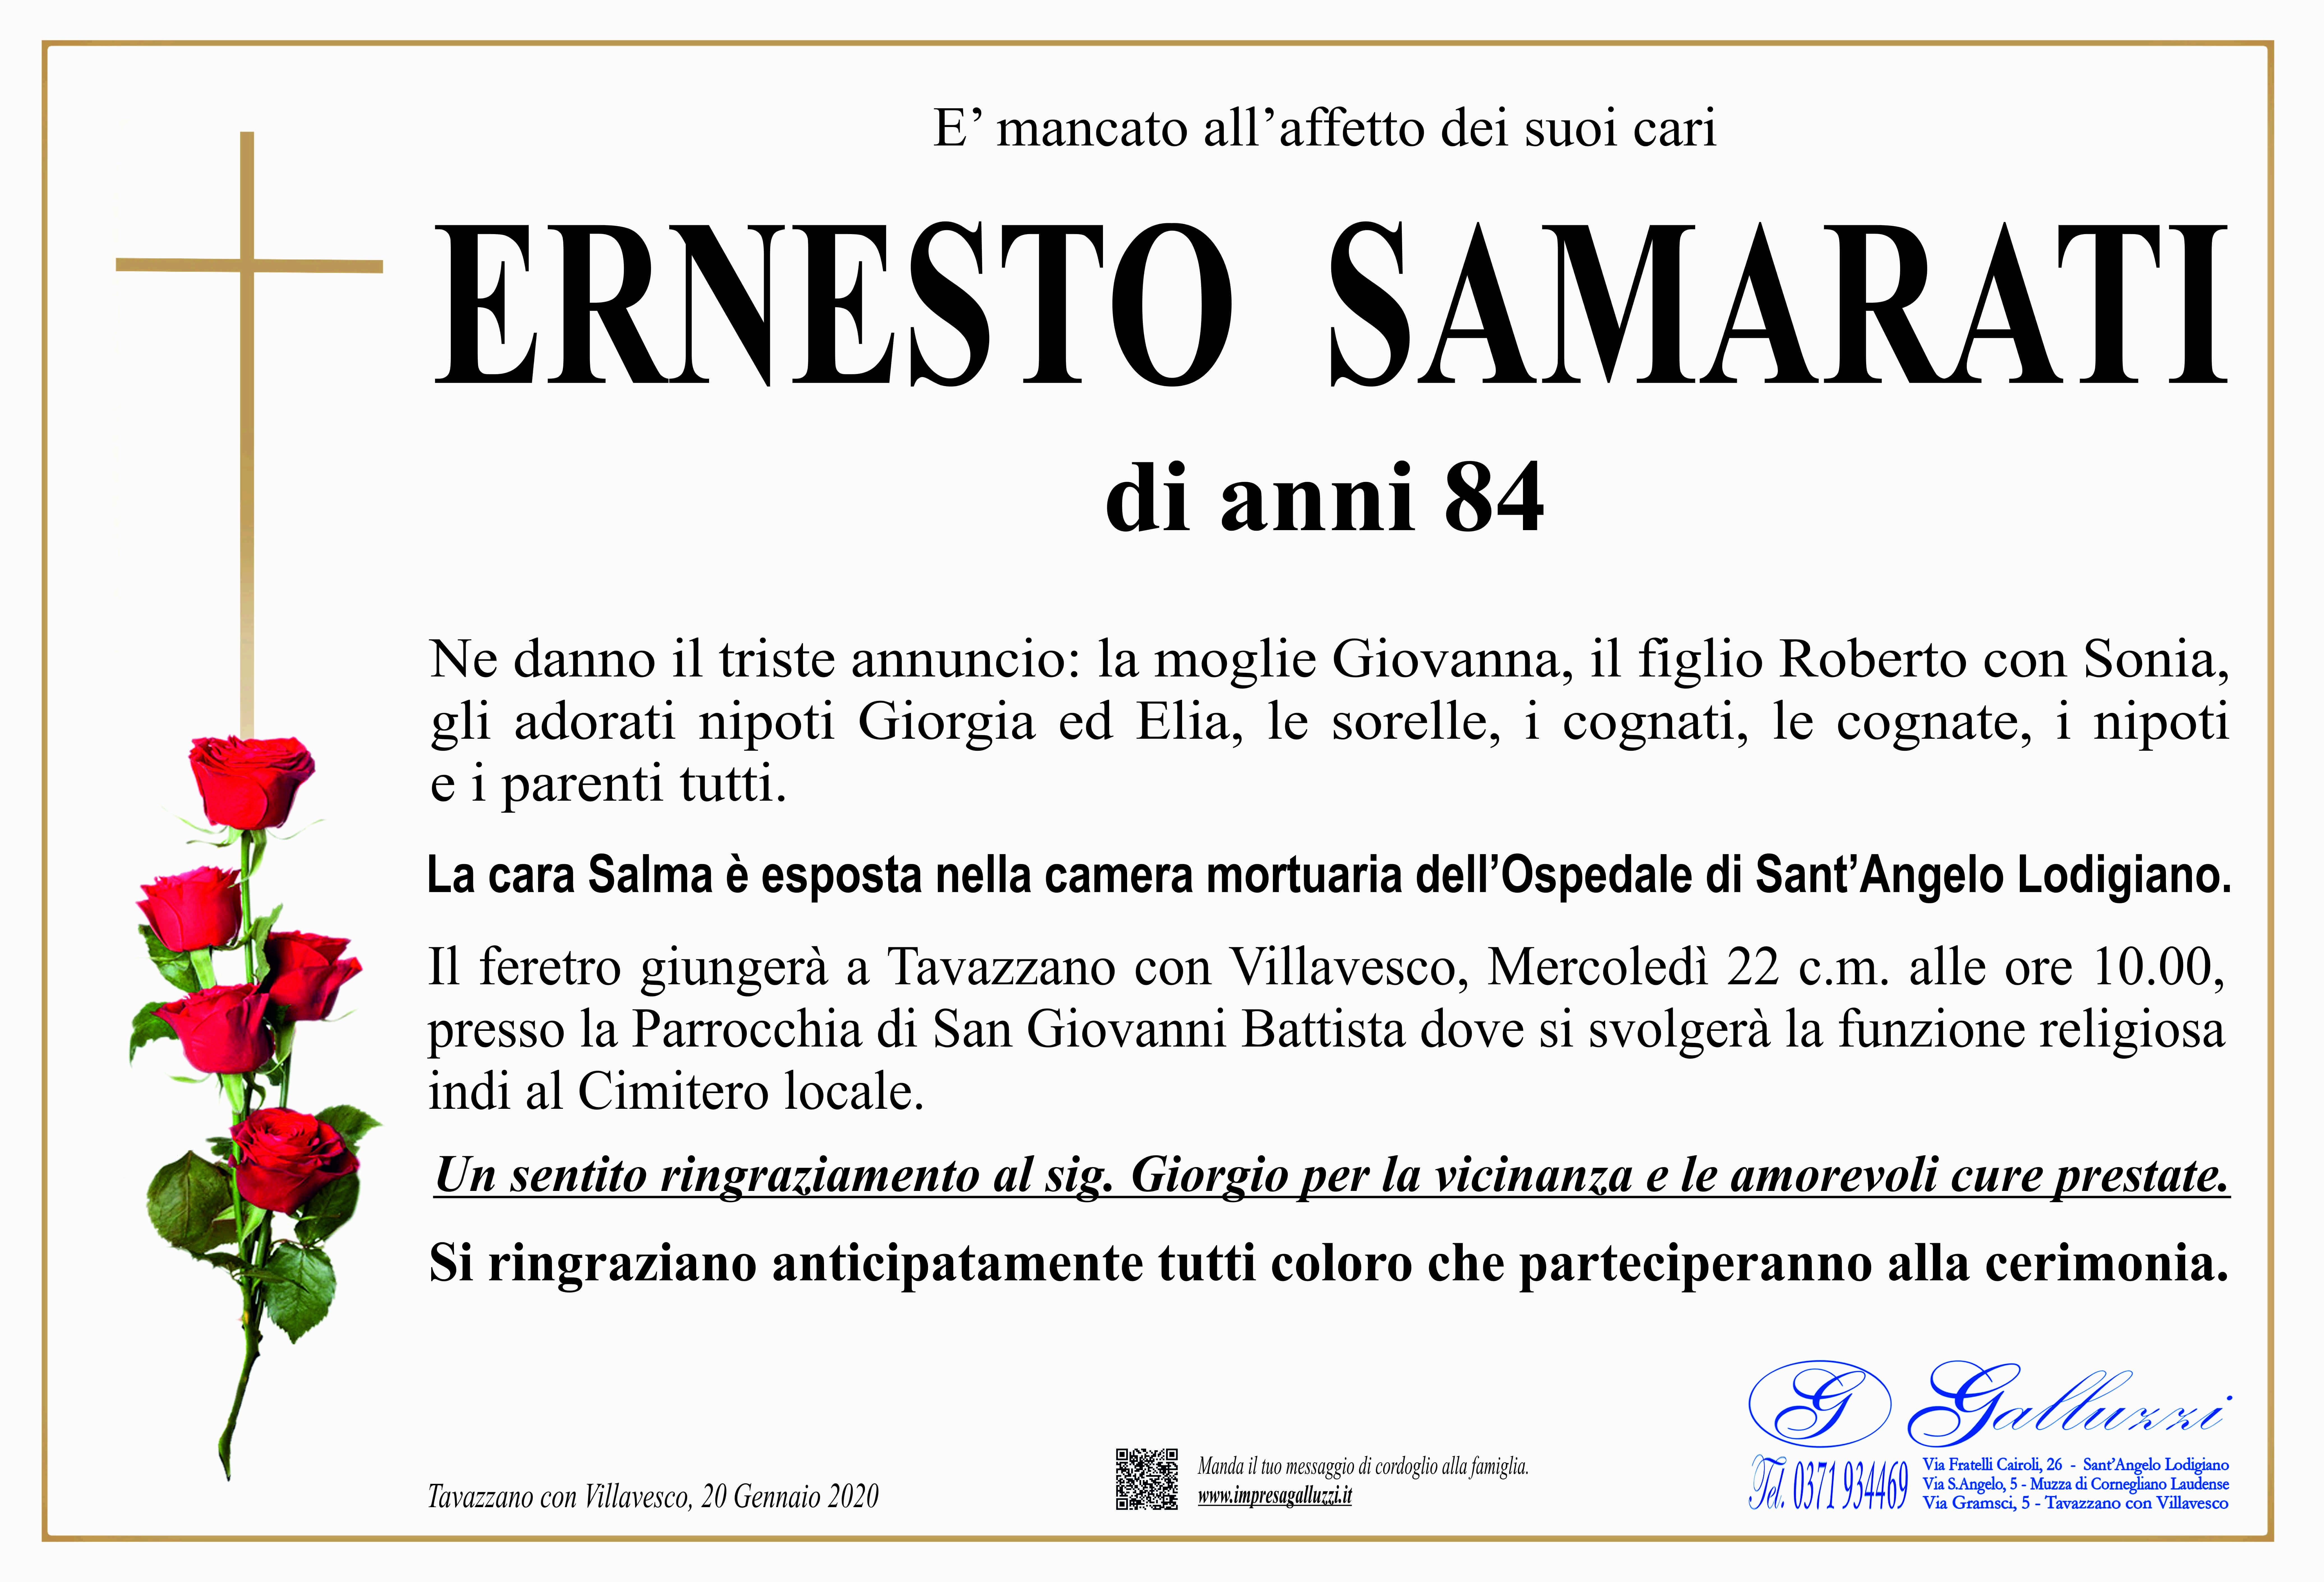 Ernesto Samarati